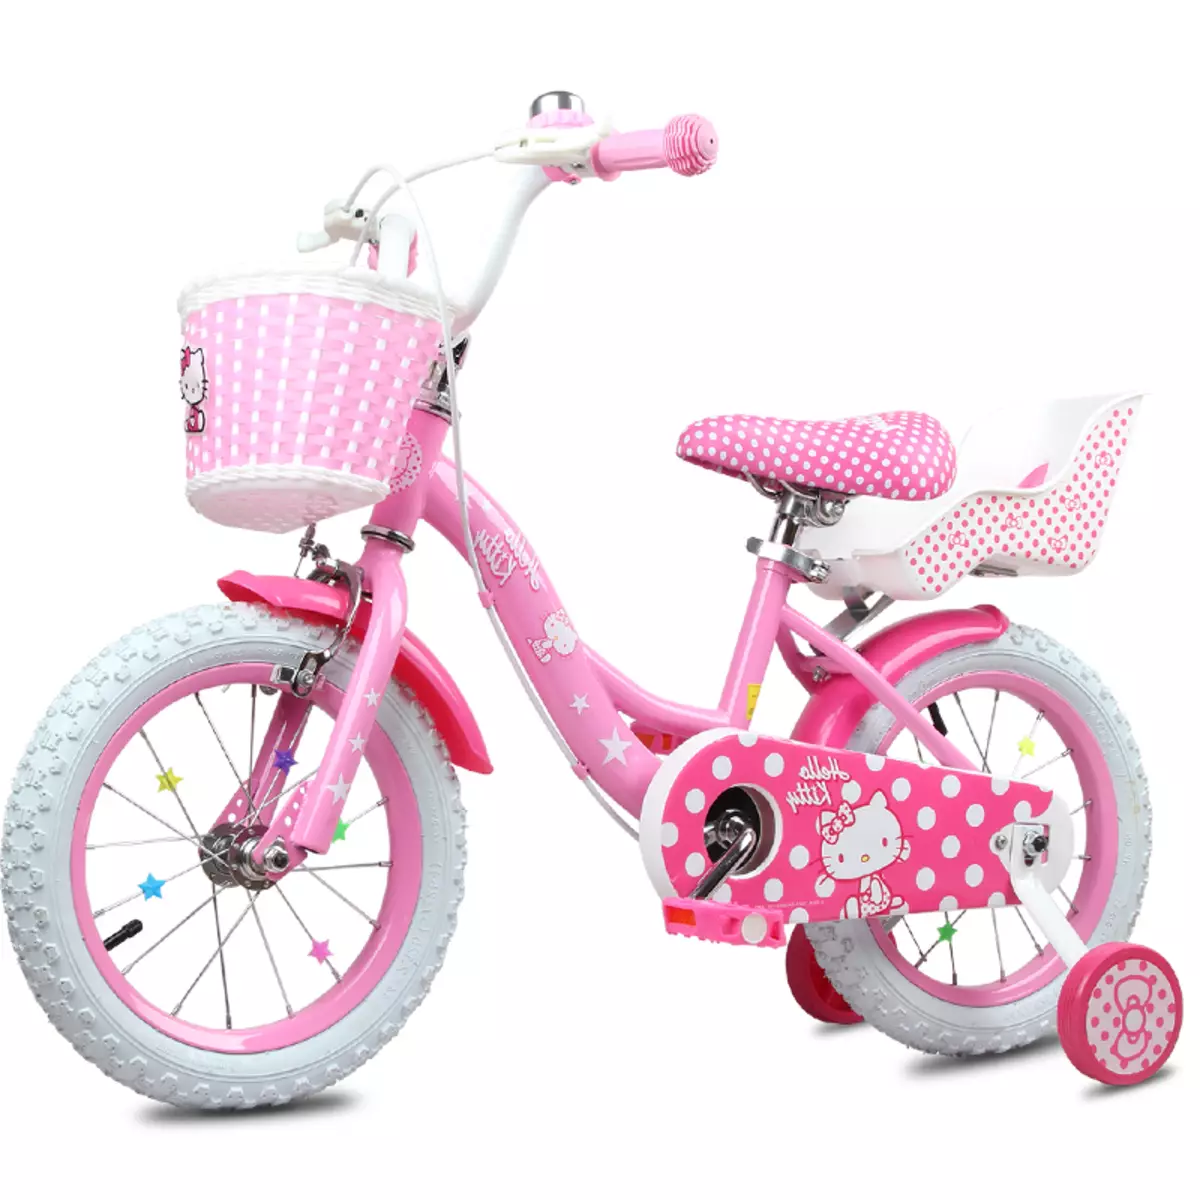 Cykel för en tjej 4 år: granskning av barns ljusa cyklar med en korg och utan. Vad är bättre att välja? 8556_4